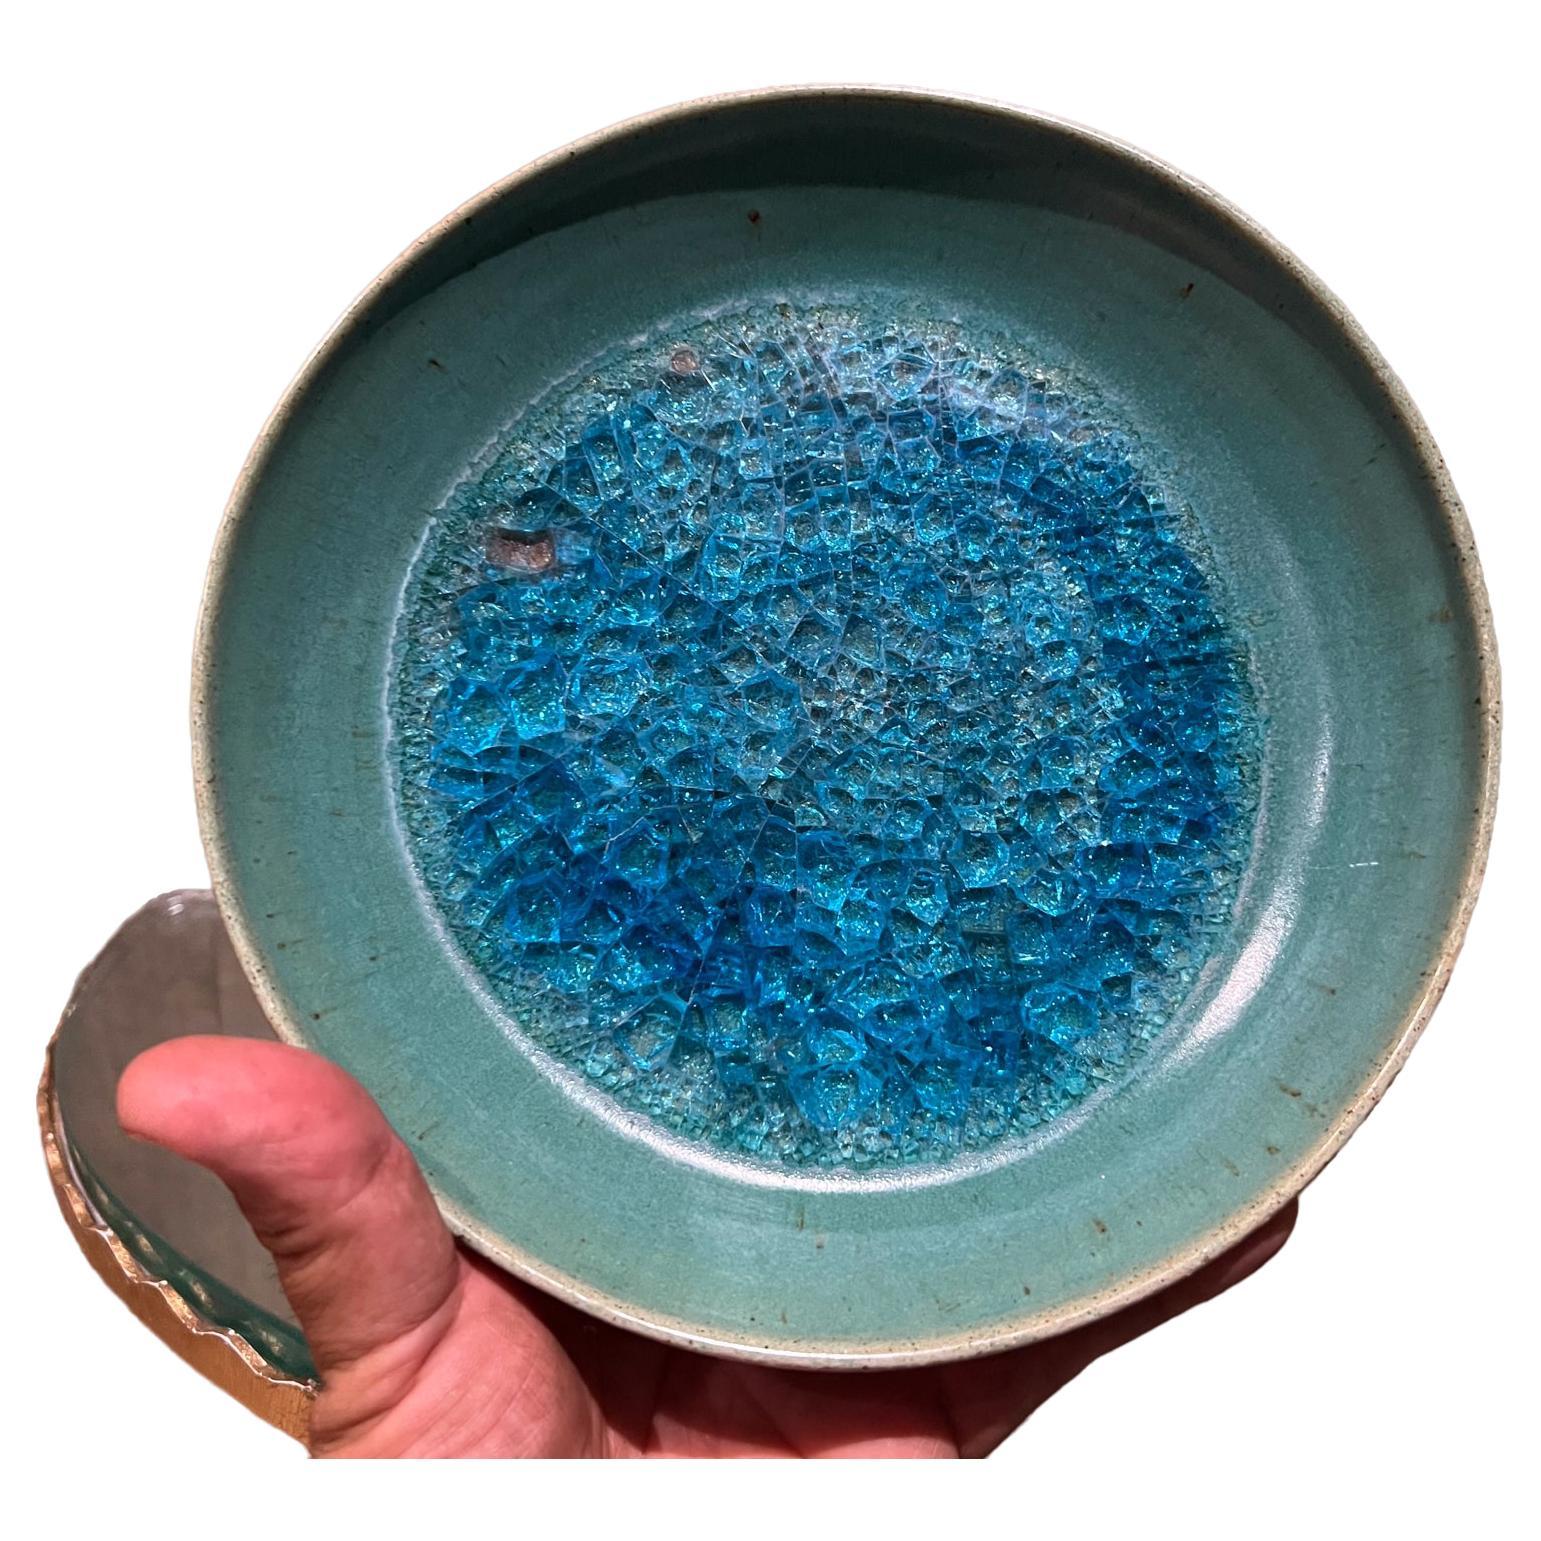 Par l'auteur et céramiste de renom, Jade Snow Wong, Decorative Dish Ceramic Pottery Art San Francisco, CA
vers 1955
Poterie en céramique avec inserts en verre émaillé.
Signé à la main et numéroté
8 diamètre x 1,25
Pertes mineures. Il manque un petit